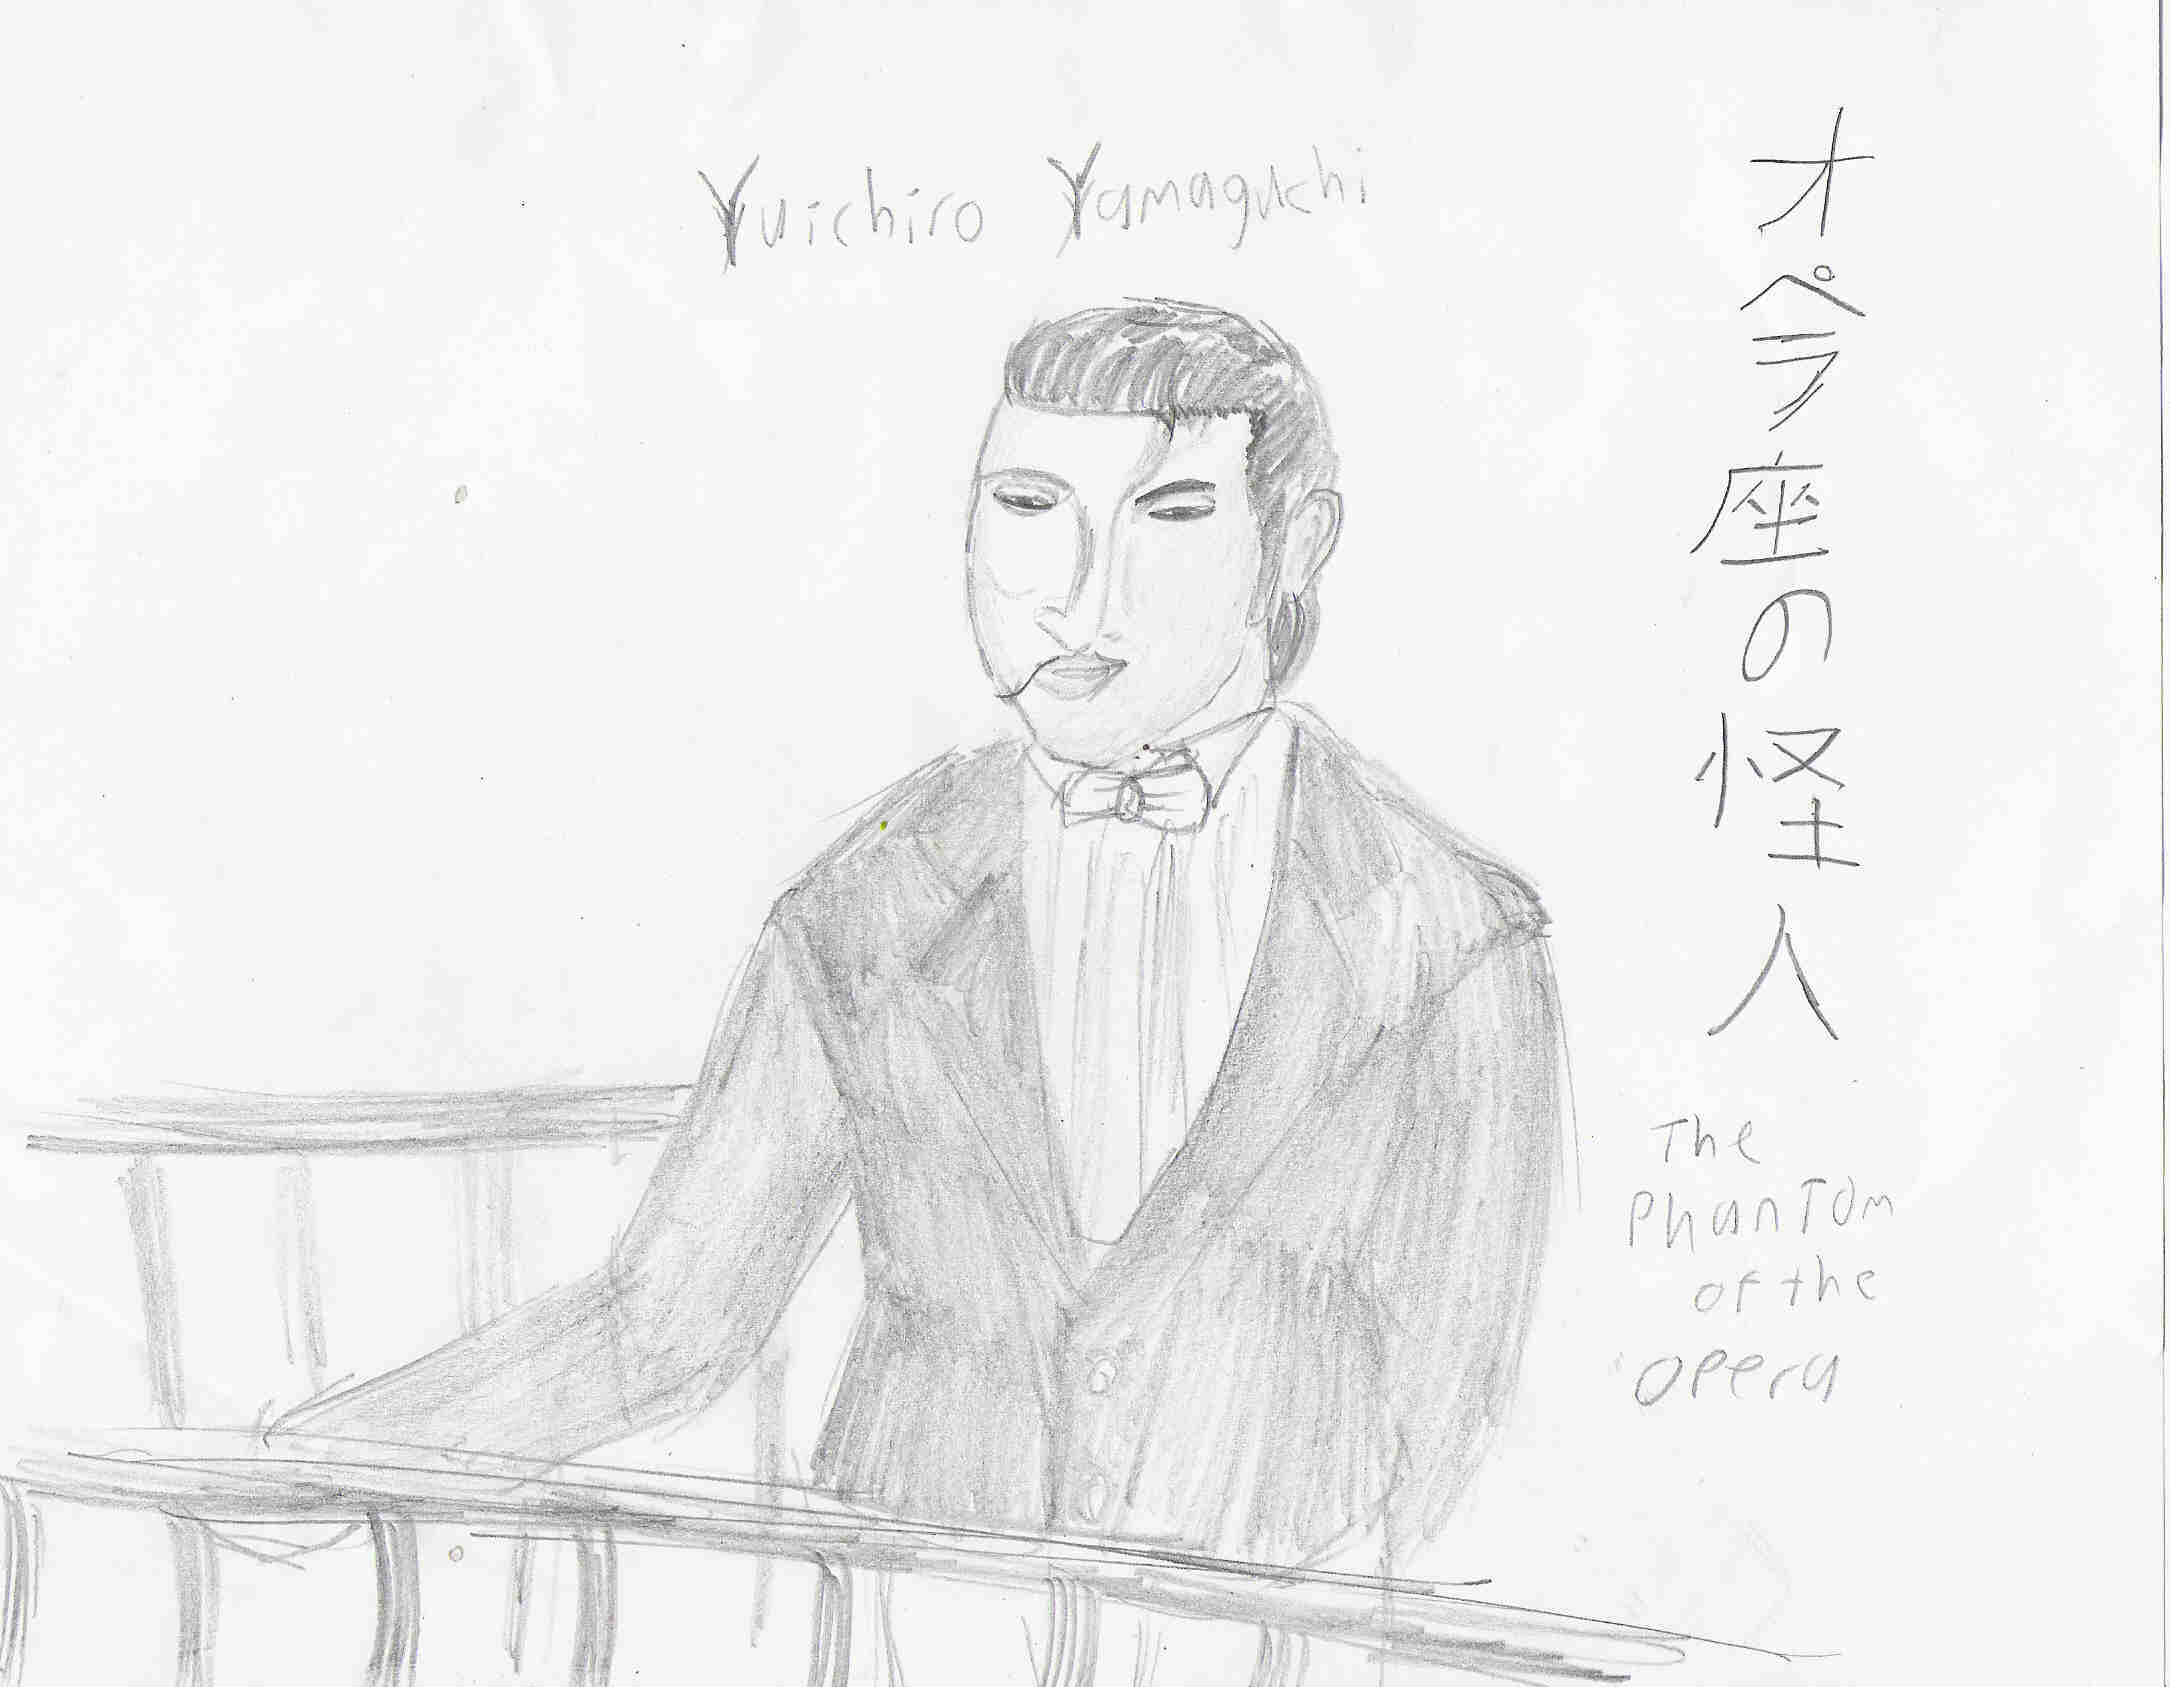 Yuichiro Yamaguchi by Matsuyama